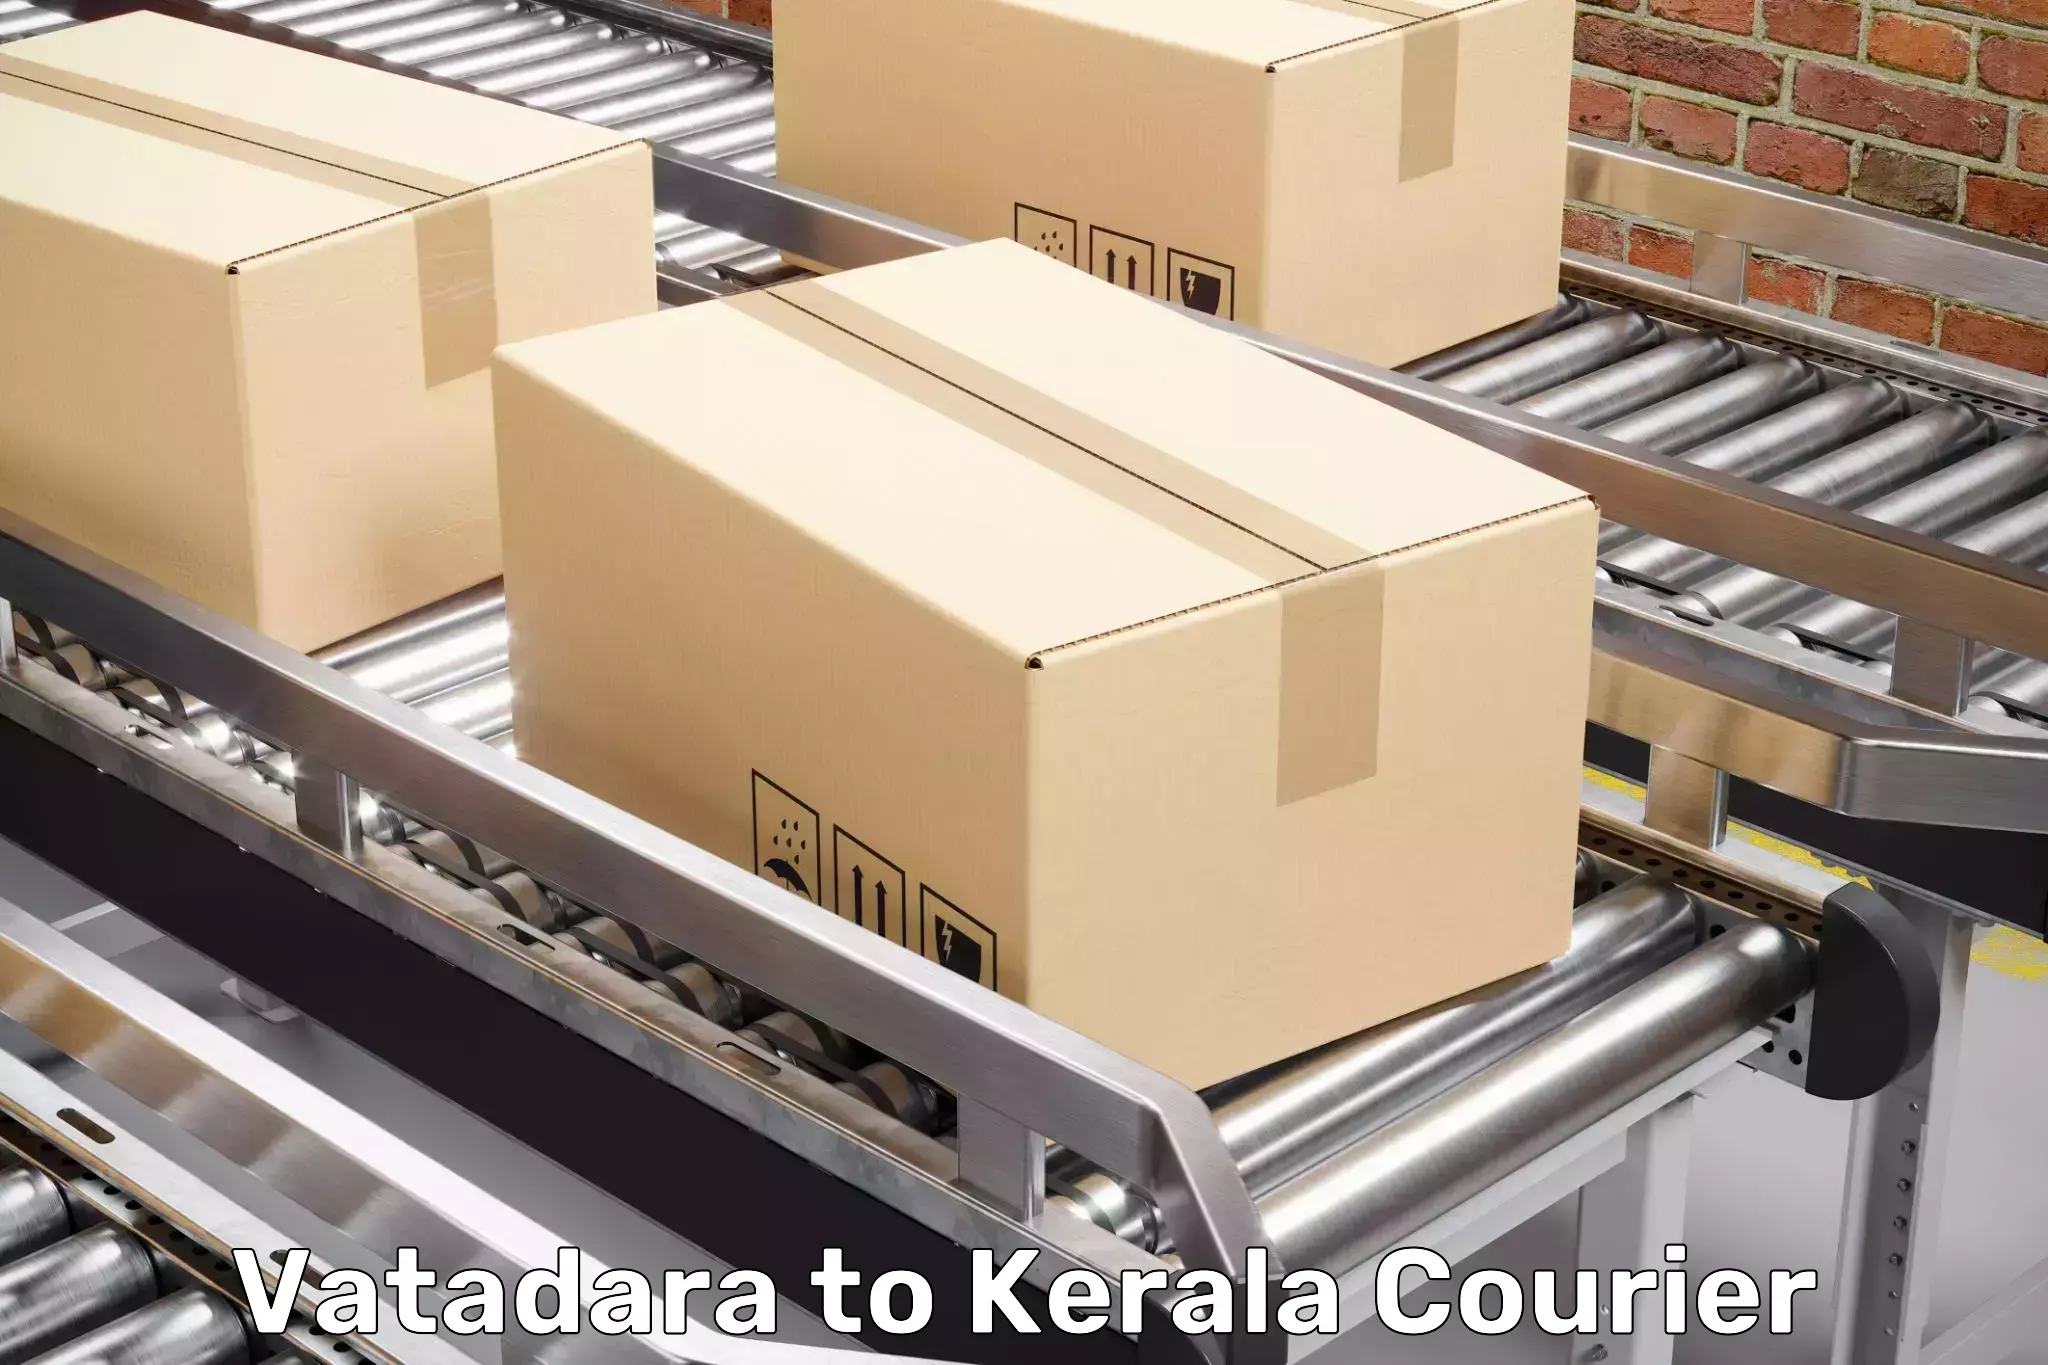 Furniture moving plans Vatadara to Kakkayam